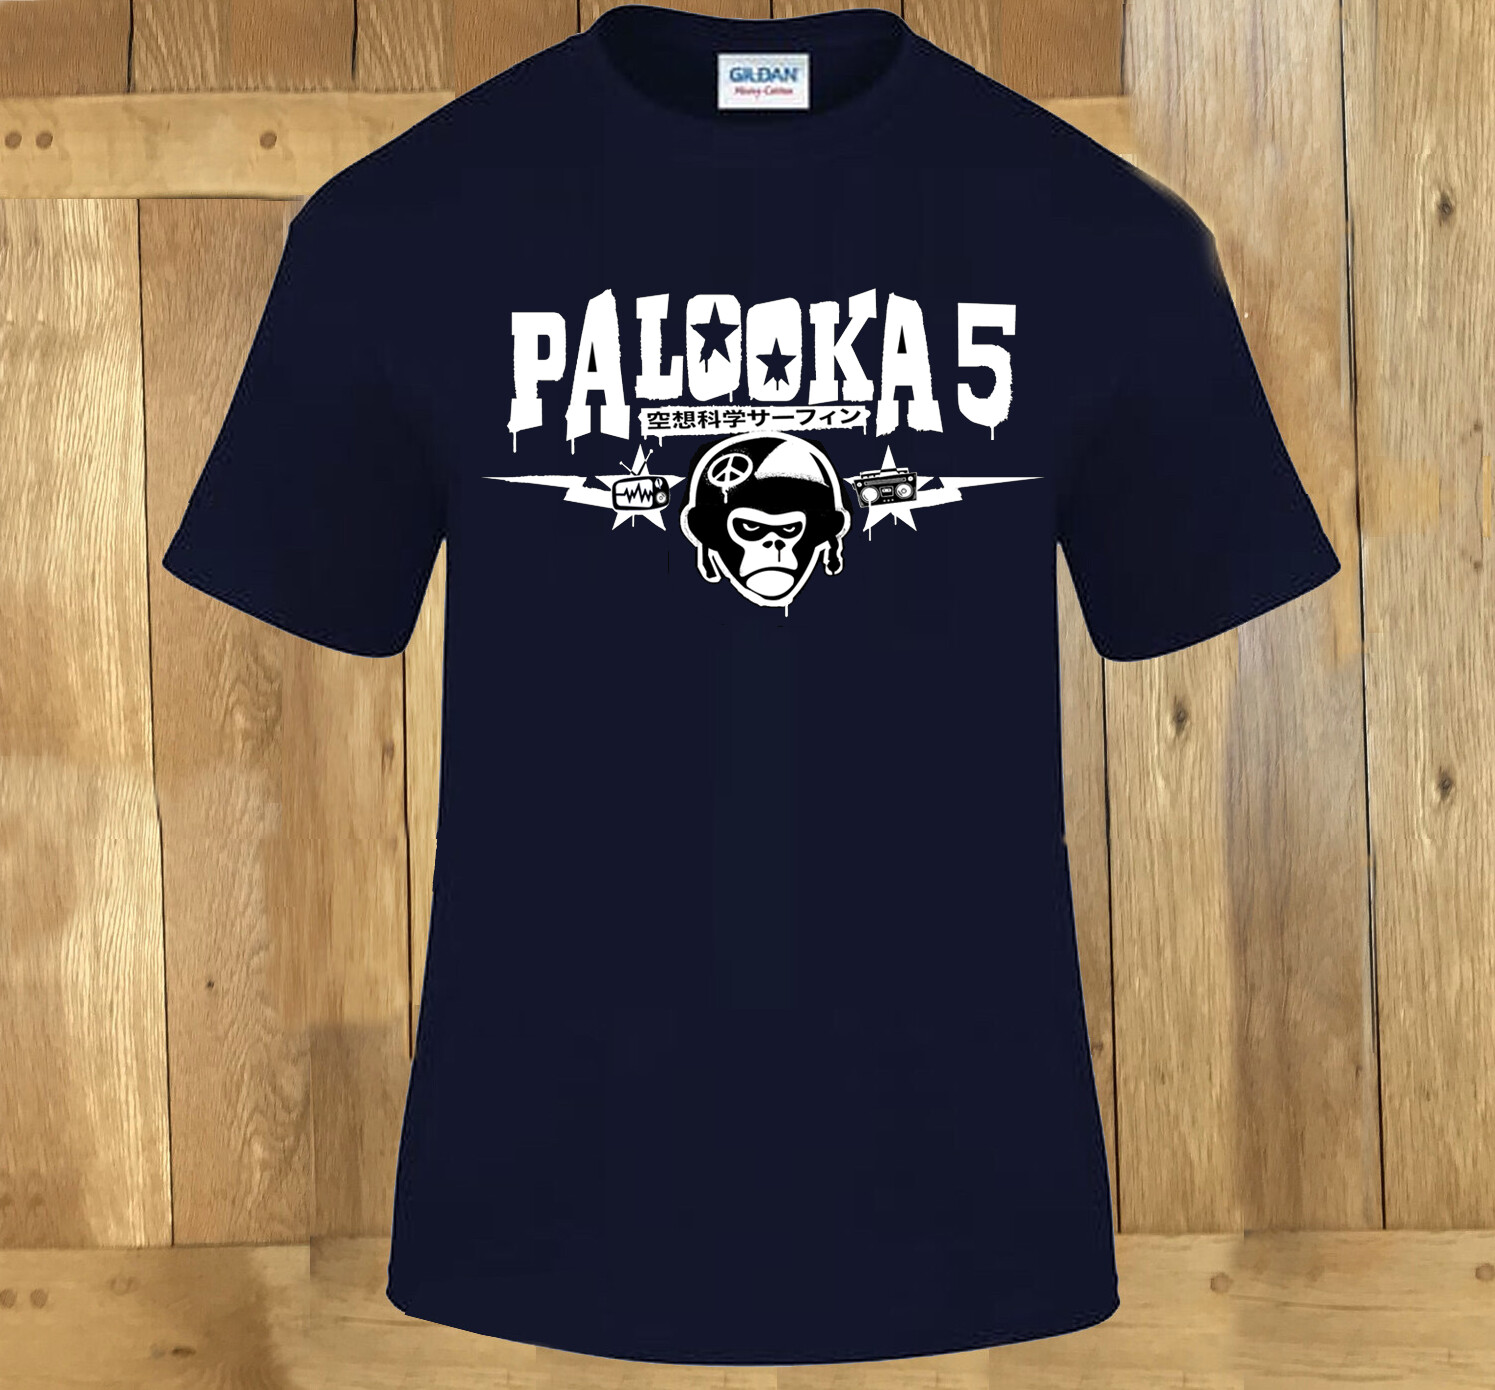 NEW Palooka 5 TShirt BLACK Medium